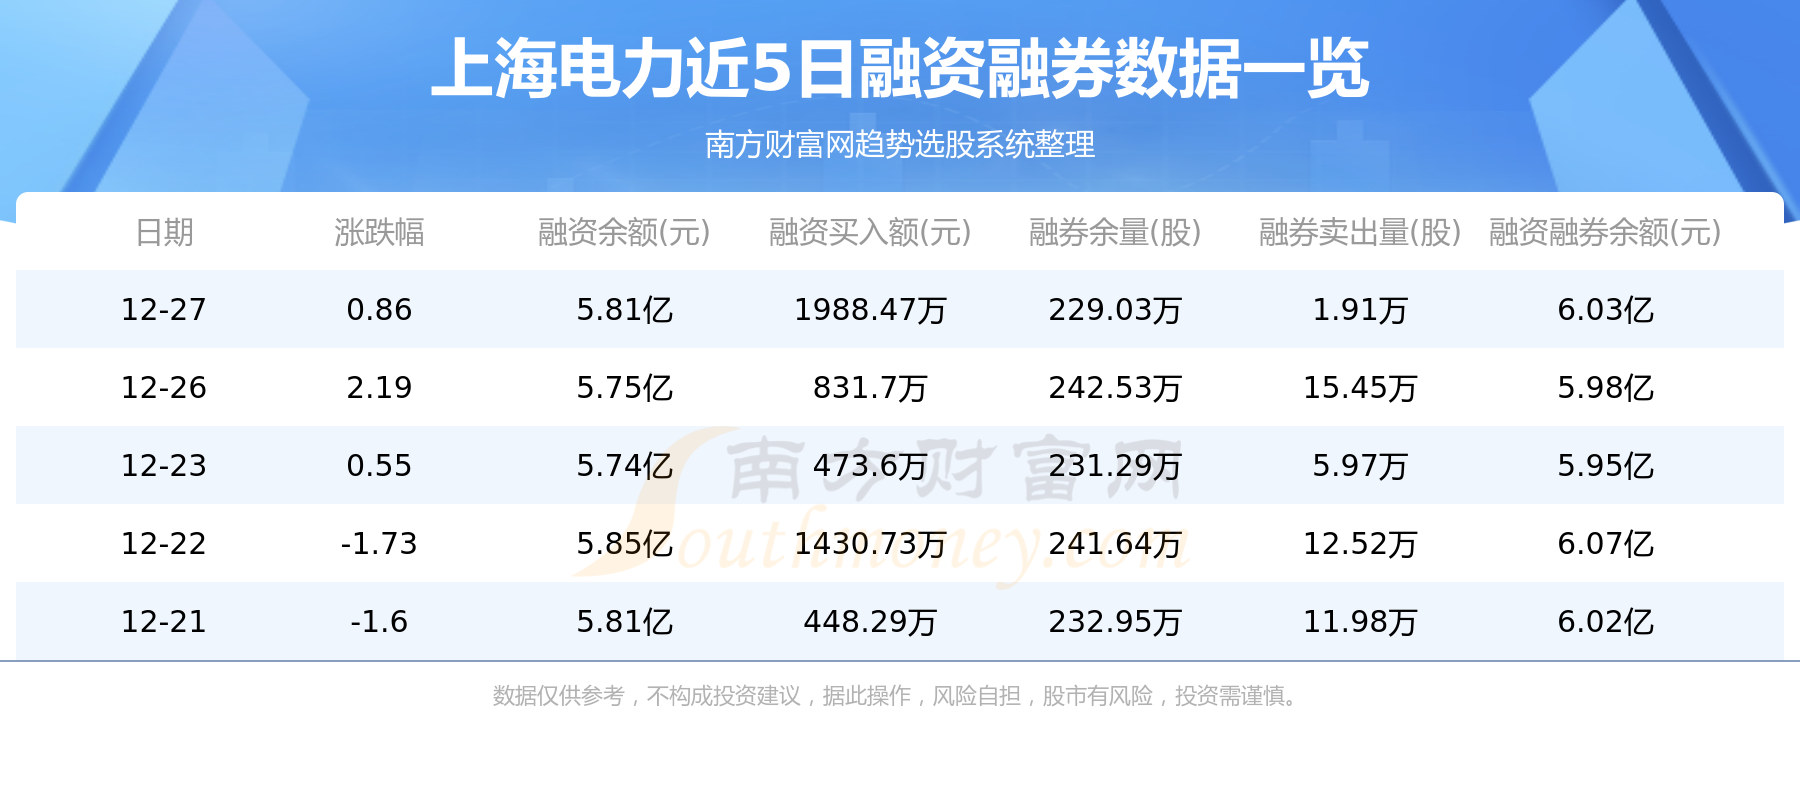 上海电力主力动向：12月28日净流入1.08亿元